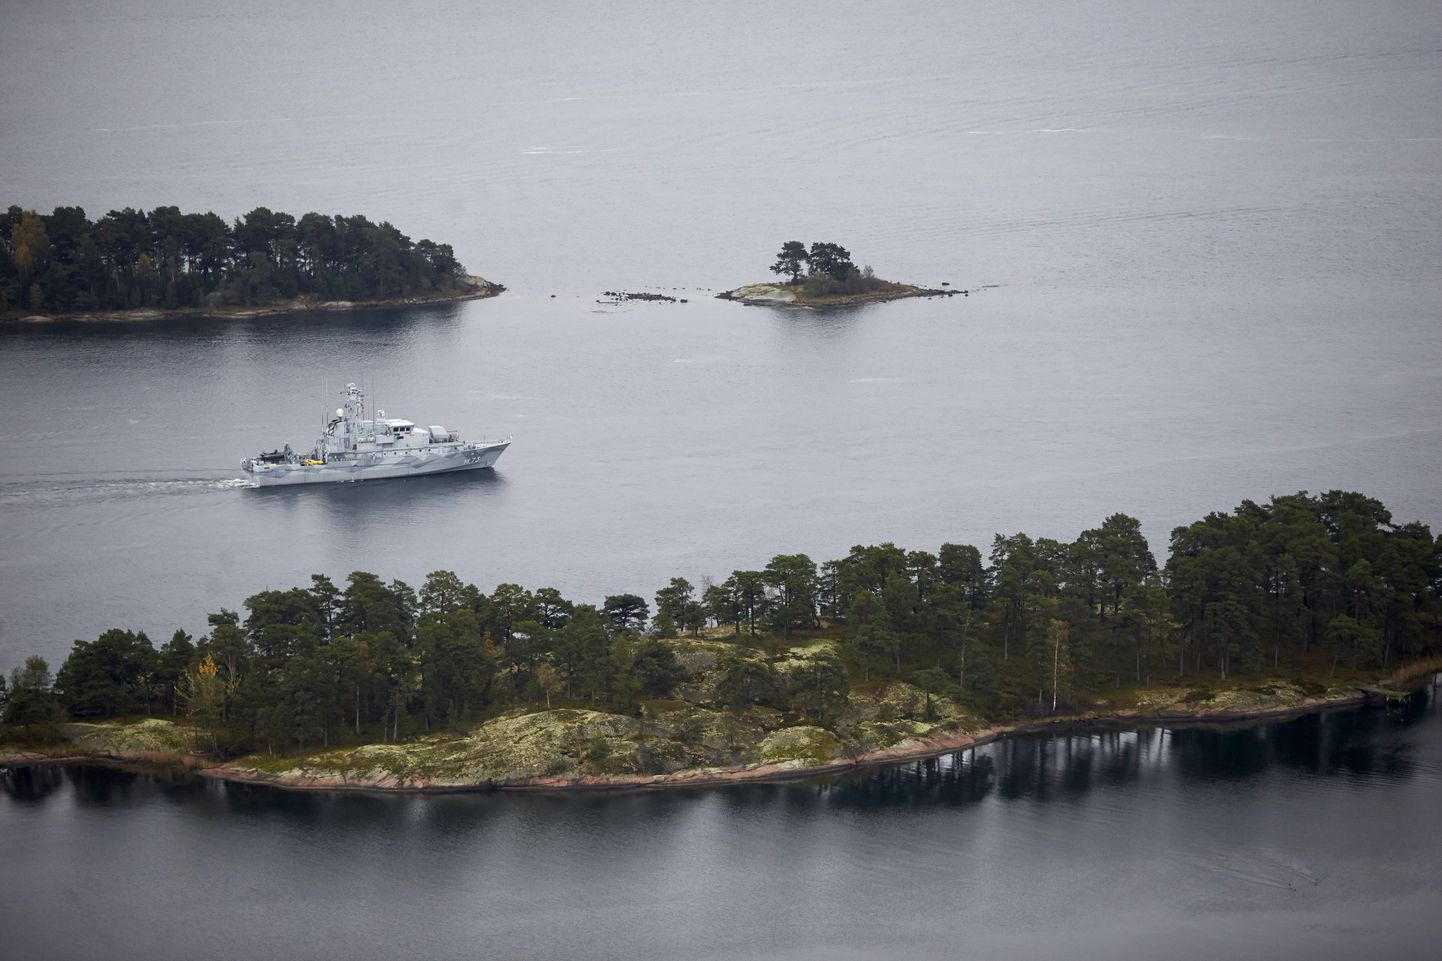 Шведы, возможно, нашли пропавшую 100 лет назад российскую субмарину «Сом».